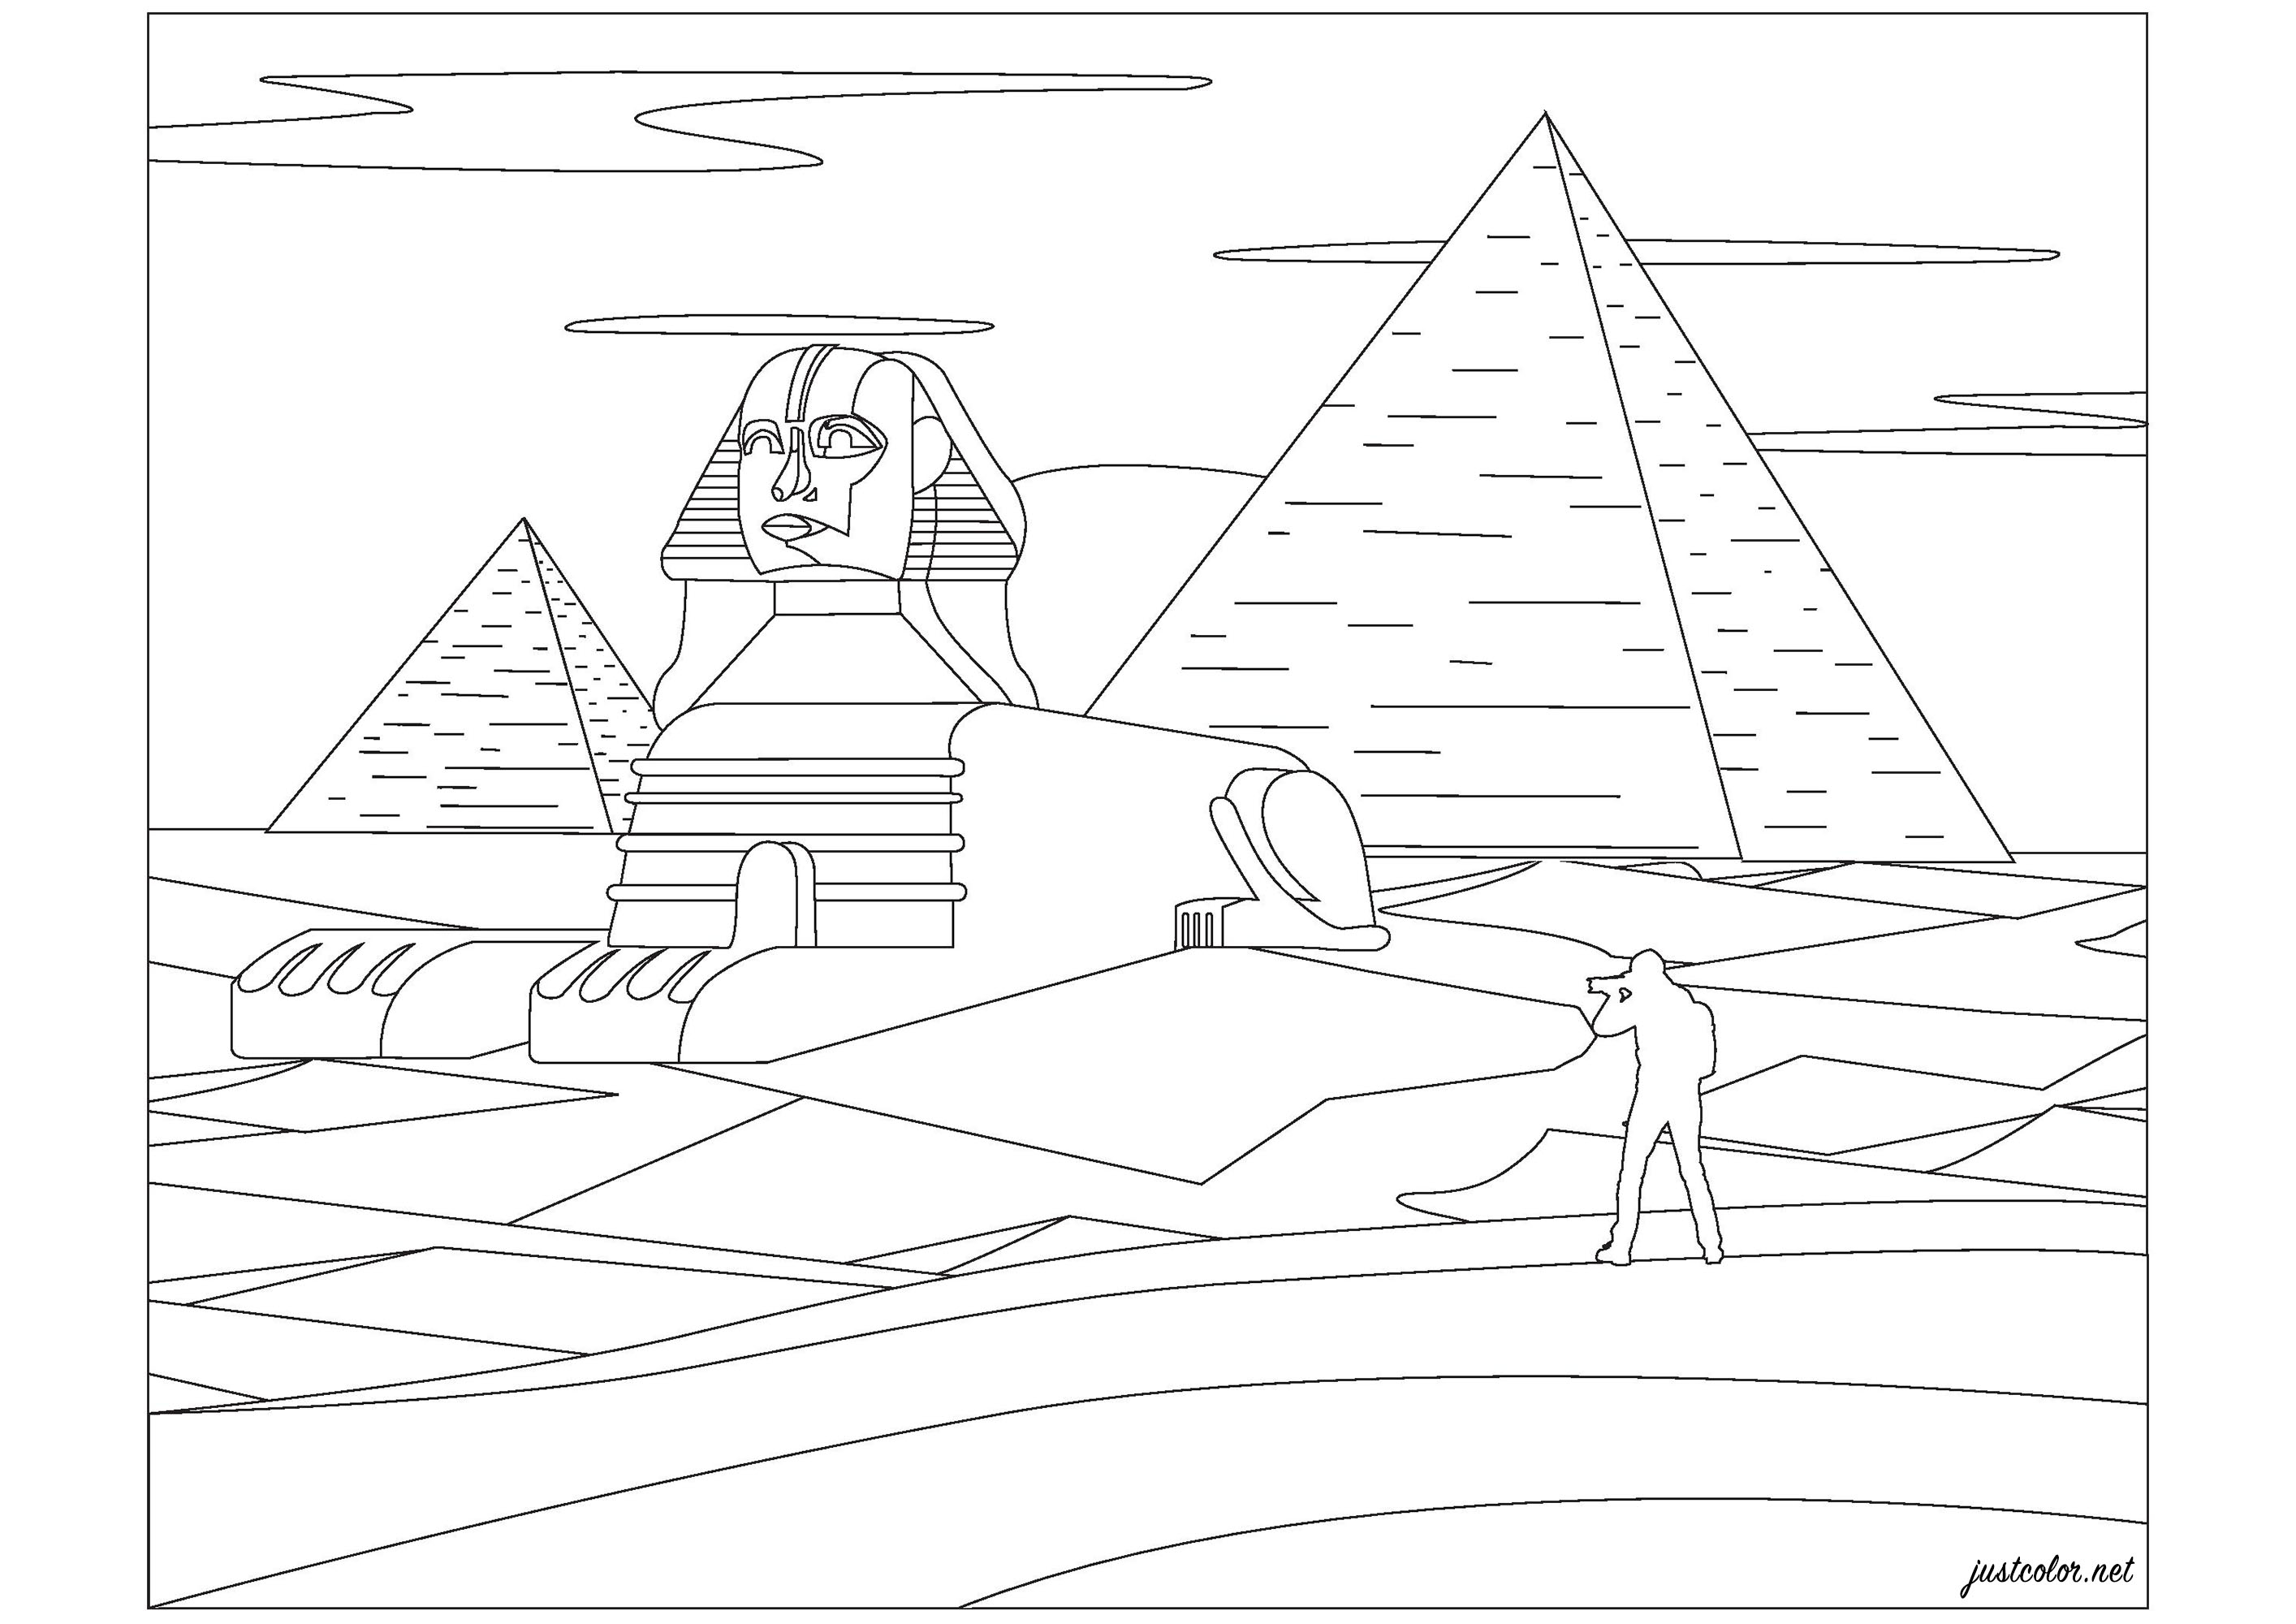 Pyramiden von Gizeh und die Sphinx, in Ägypten. Die Pyramiden von Gizeh wurden vor 4.500 Jahren während der vierten Dynastie, dem goldenen Zeitalter Ägyptens, erbaut. Wie diese Pyramiden gebaut wurden, ist ebenfalls eine Quelle von Spekulationen und Debatten. Viele Forscher glauben, dass ein Rampensystem verwendet wurde, um die Blöcke während des Baus an ihren Platz zu bewegen. Als die Pyramiden fertiggestellt waren, wurden sie ganz oder teilweise mit weißem Kalkstein ummantelt, der heute größtenteils verloren ist. Mit einer Länge von 73 Metern (240 Fuß) und einer Höhe von 20 Metern (66 Fuß) ist die Große Sphinx eine riesige, 4.500 Jahre alte Kalksteinstatue, Künstler : Pierre C